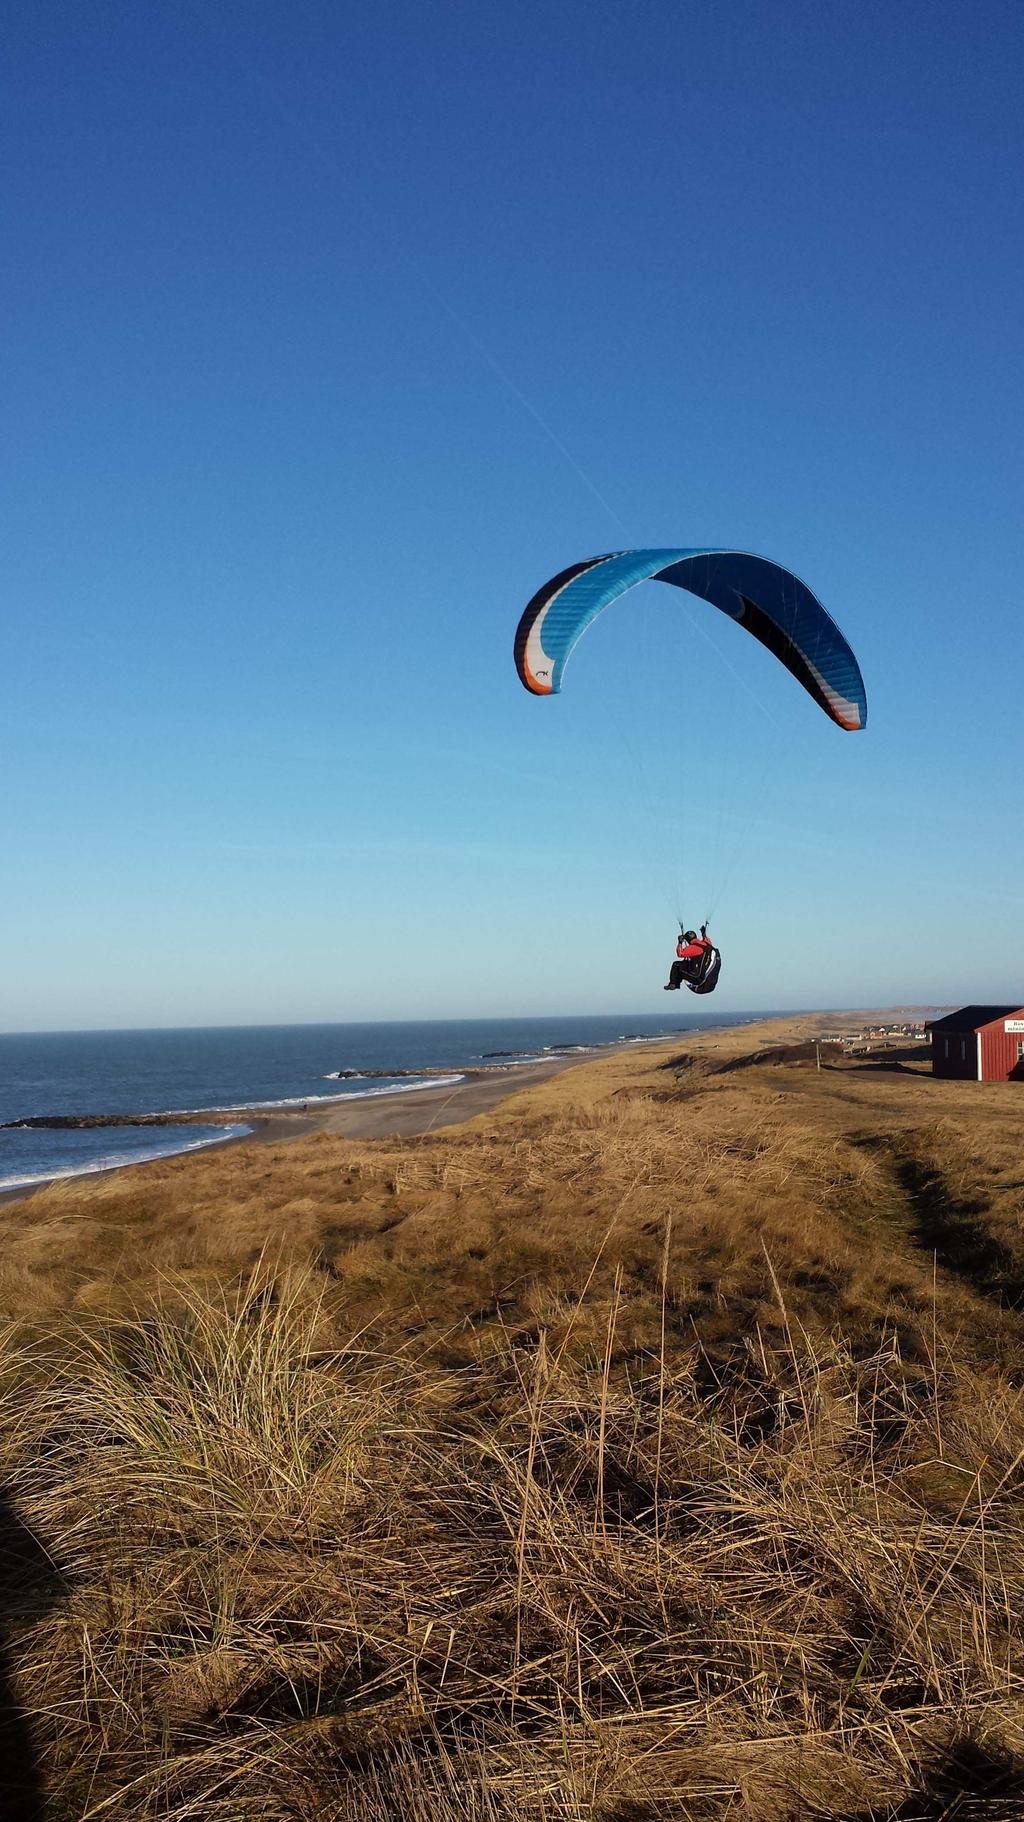 at nyde solnedgangen. Unge og lidt ældre kommer og dyrker bl.a. paragliding, hvor de høje skrænter gør det muligt at svæve frem og tilbage langs kysten.